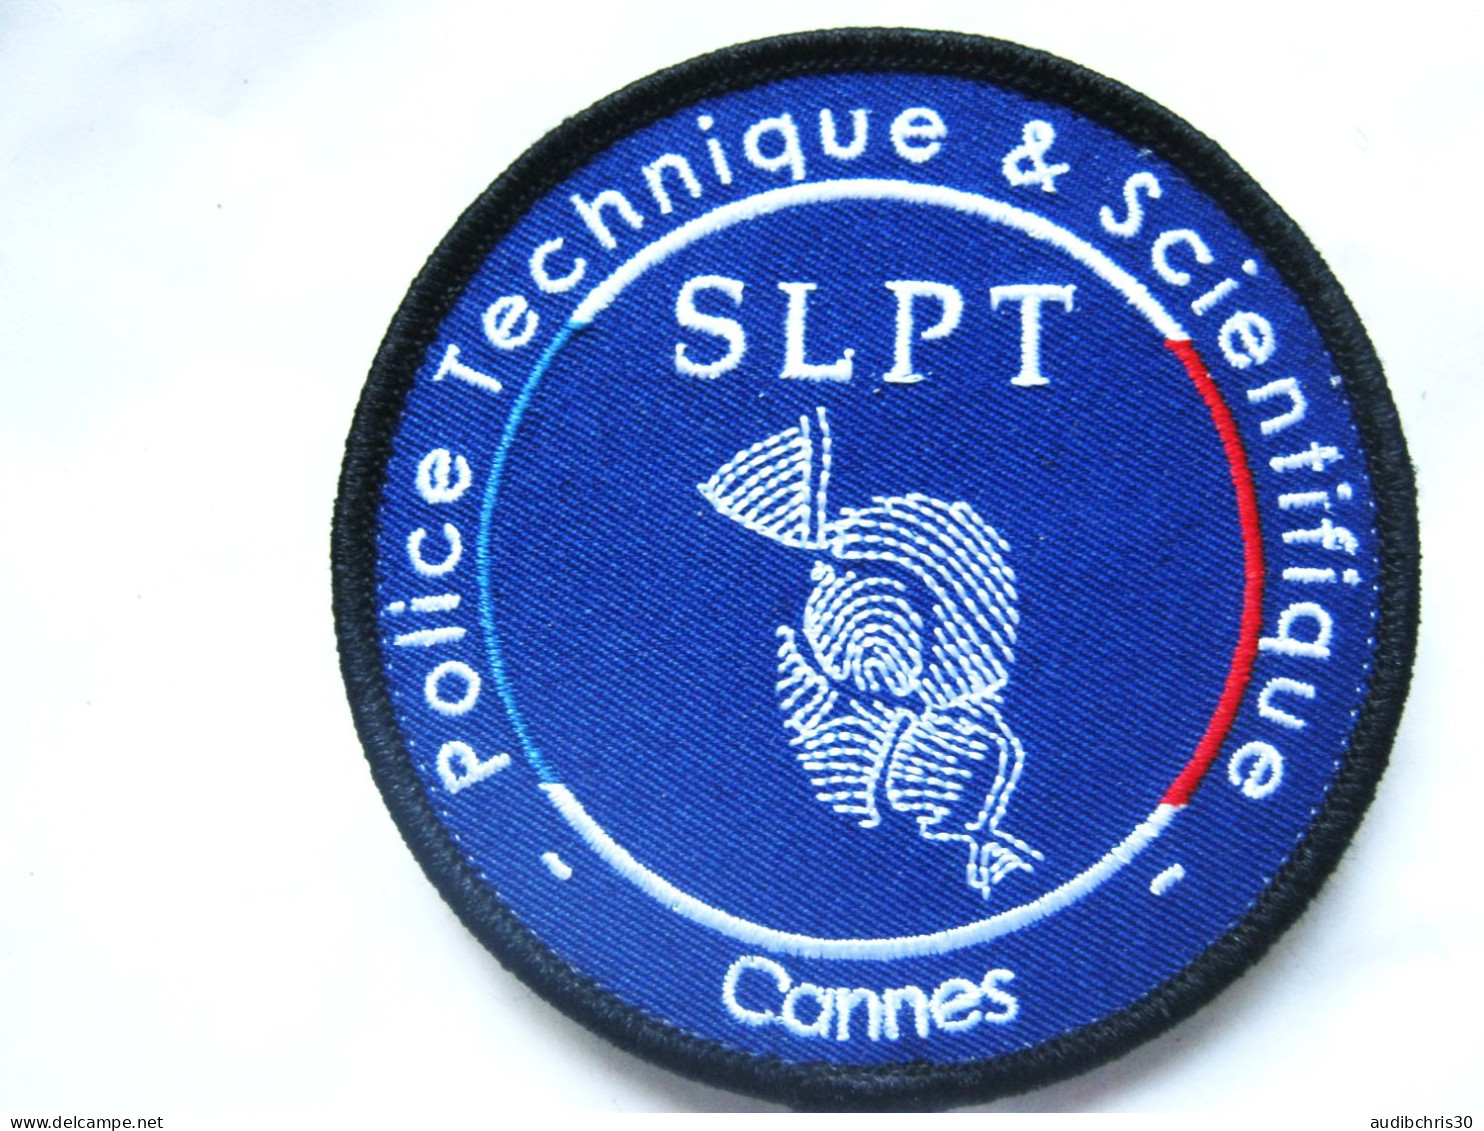 ECUSSON POLICE PTS / SLPT DE CANNES 06 (fond Bleu) SCRATCH AU DOS 85MM ETAT EXCELLENT - Police & Gendarmerie